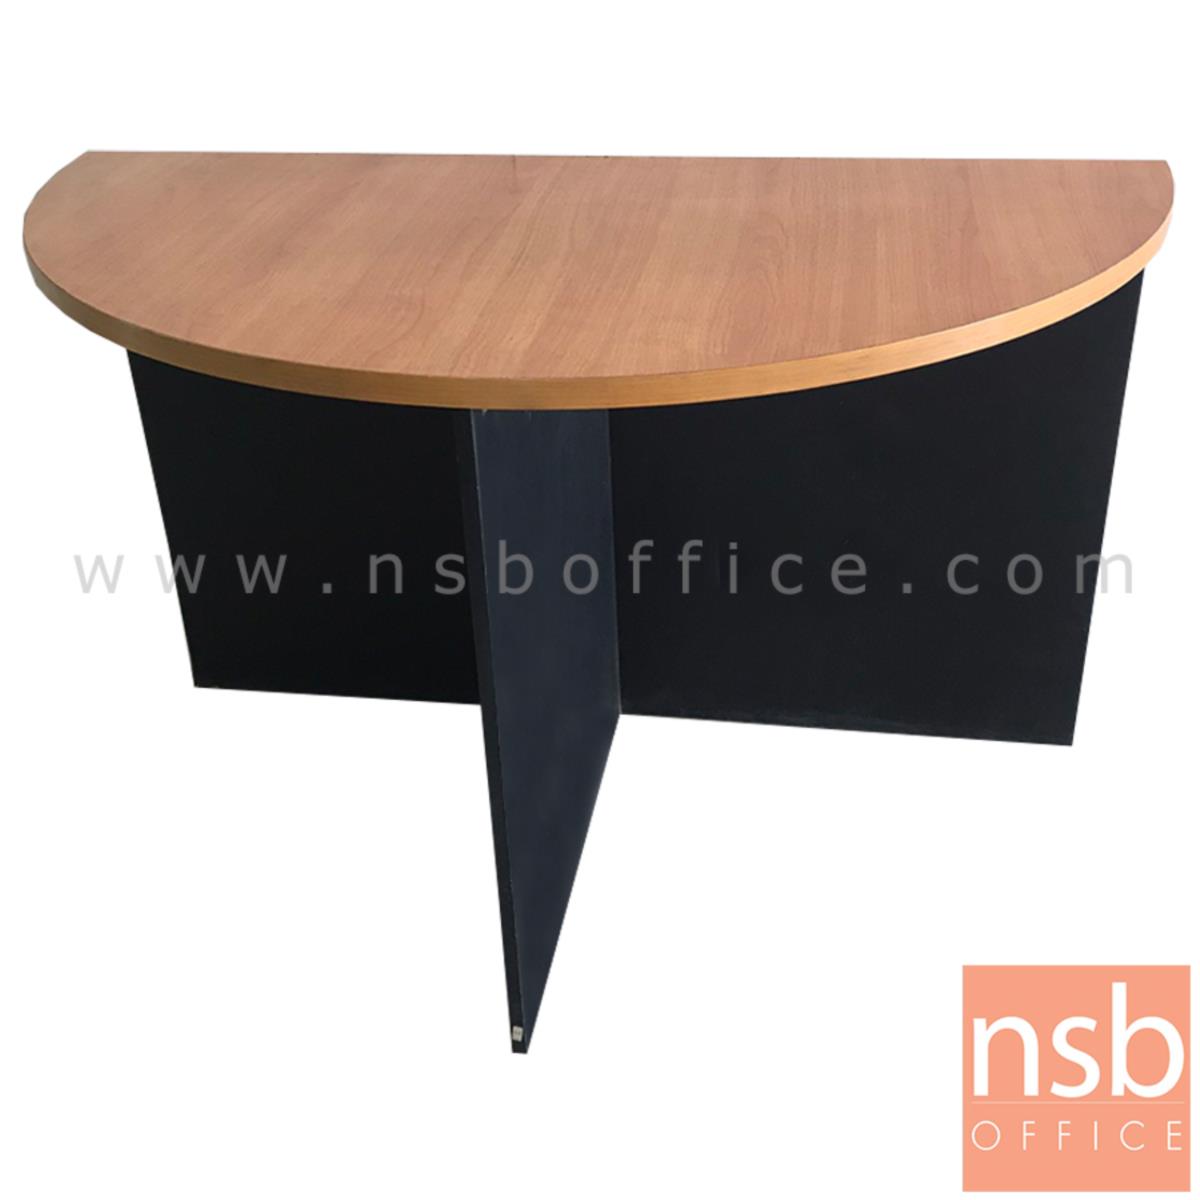 L08A113:โต๊ะเข้ามุม  ขนาด 120W*75H cm. เมลามีน สีเชอร์รี่ดำ